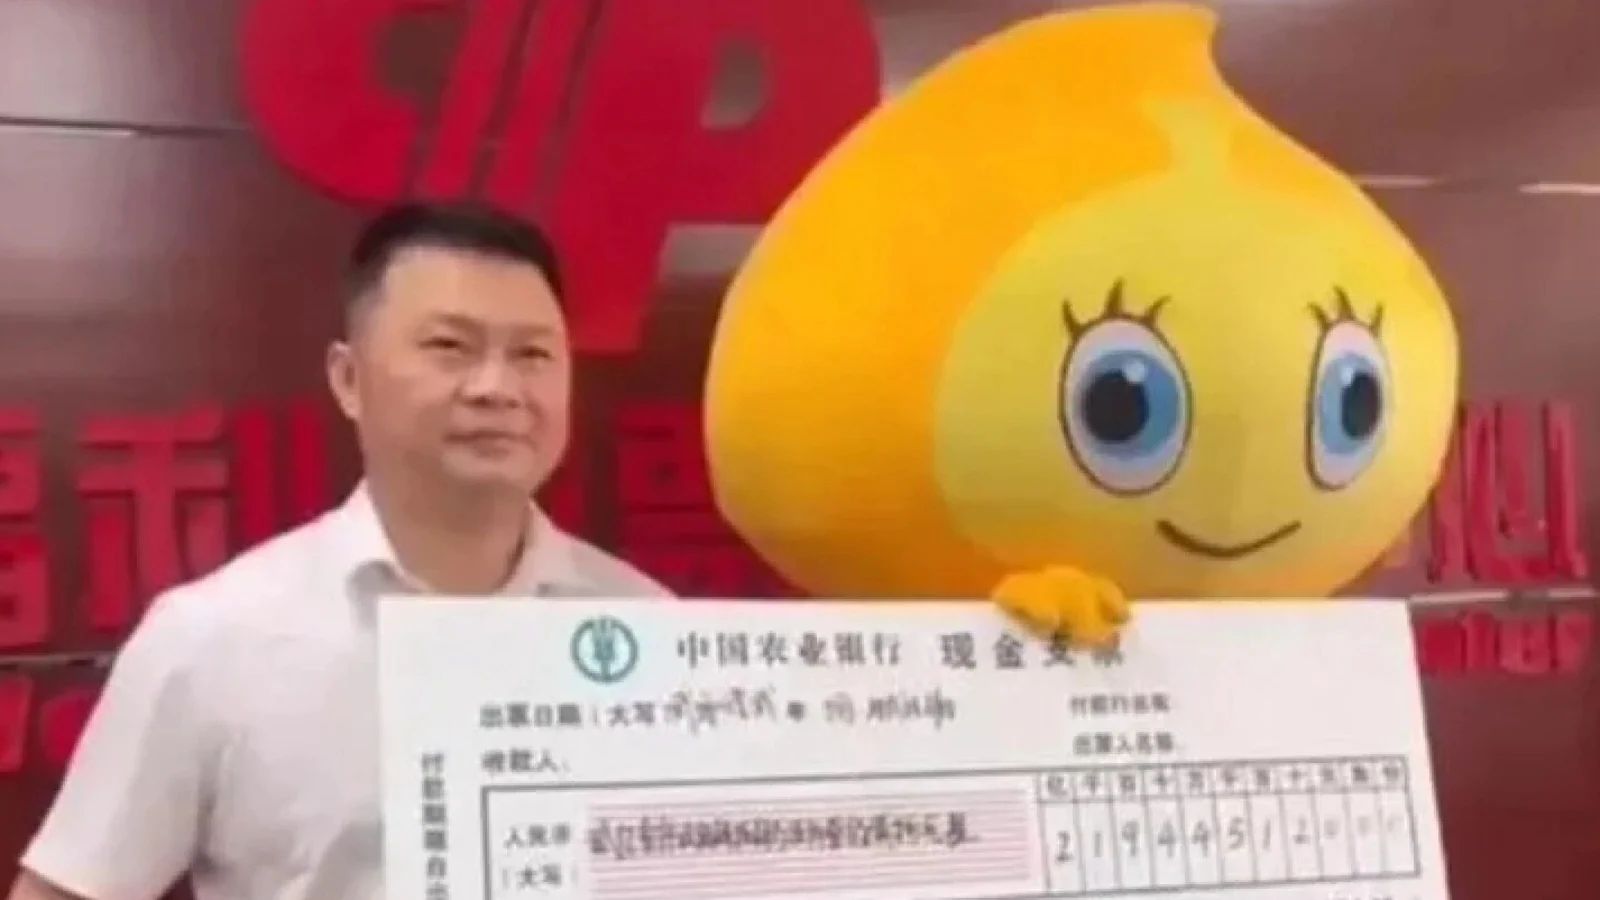 中国彩票中奖者向家人隐瞒3000万美元的奖金，以免他们变得懒惰